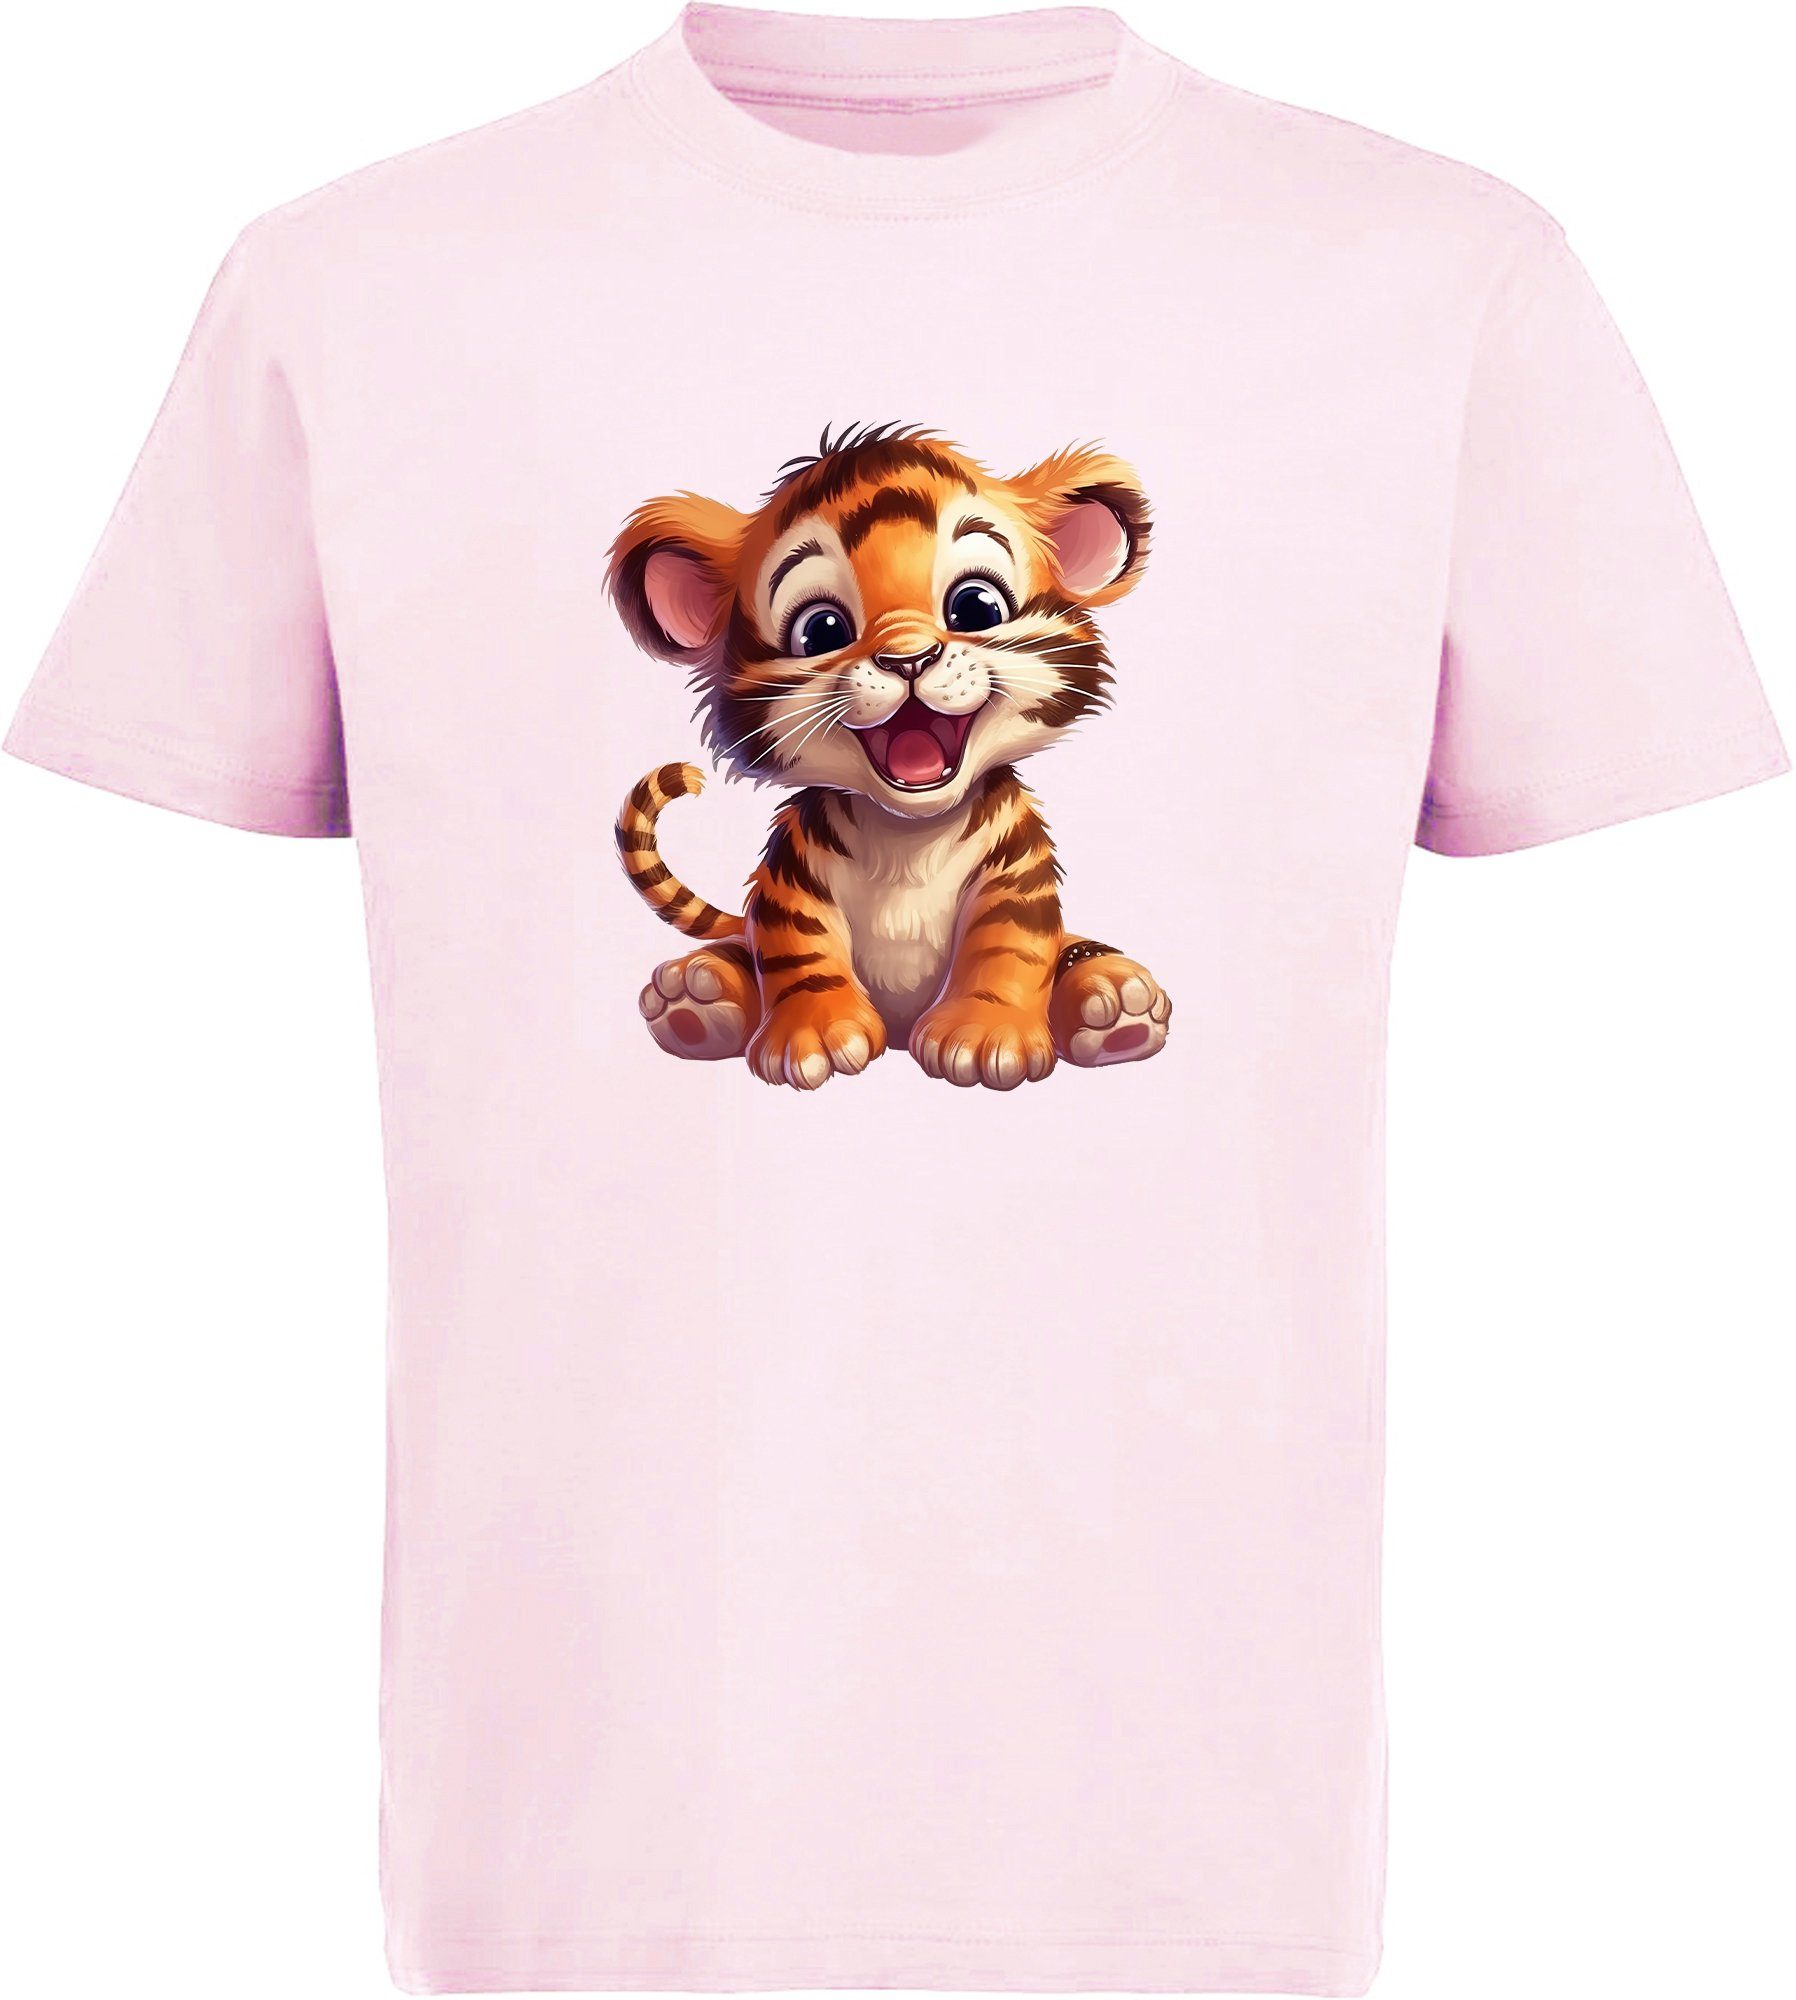 MyDesign24 T-Shirt Kinder rosa Aufdruck, Baumwollshirt i266 - Print Baby bedruckt Tiger Wildtier mit Shirt